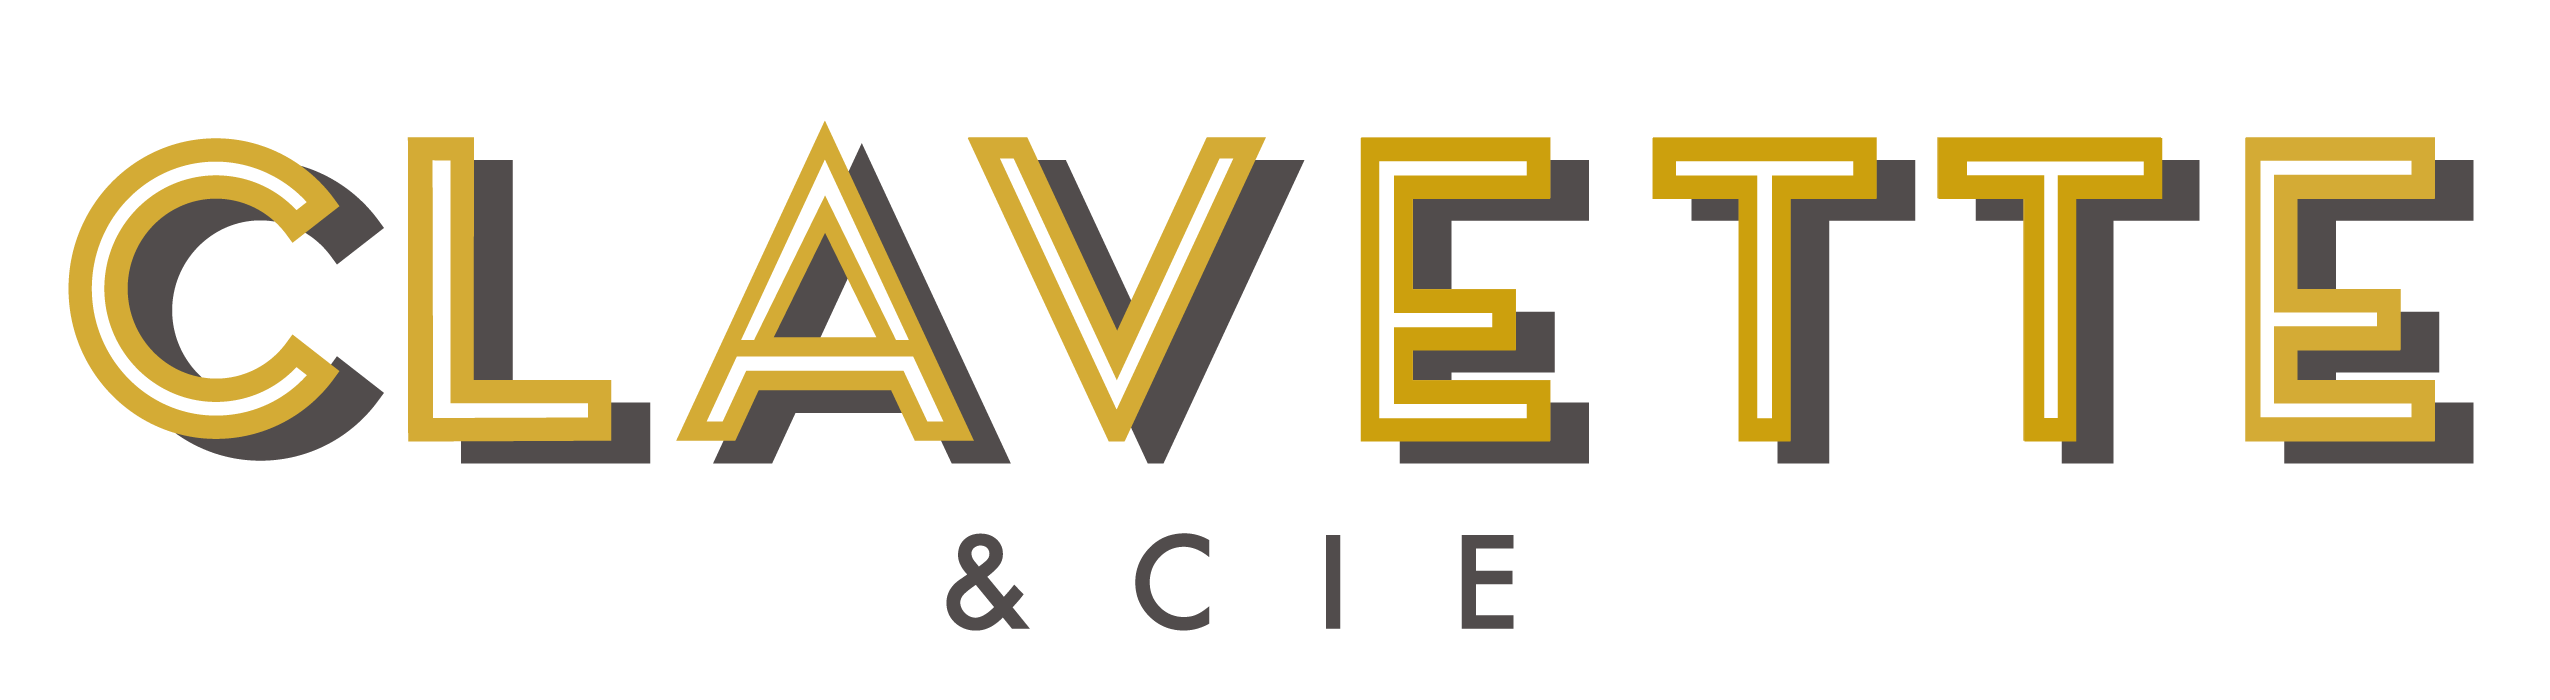 FINAL-CLAVETTE-CIE-logo-04.png